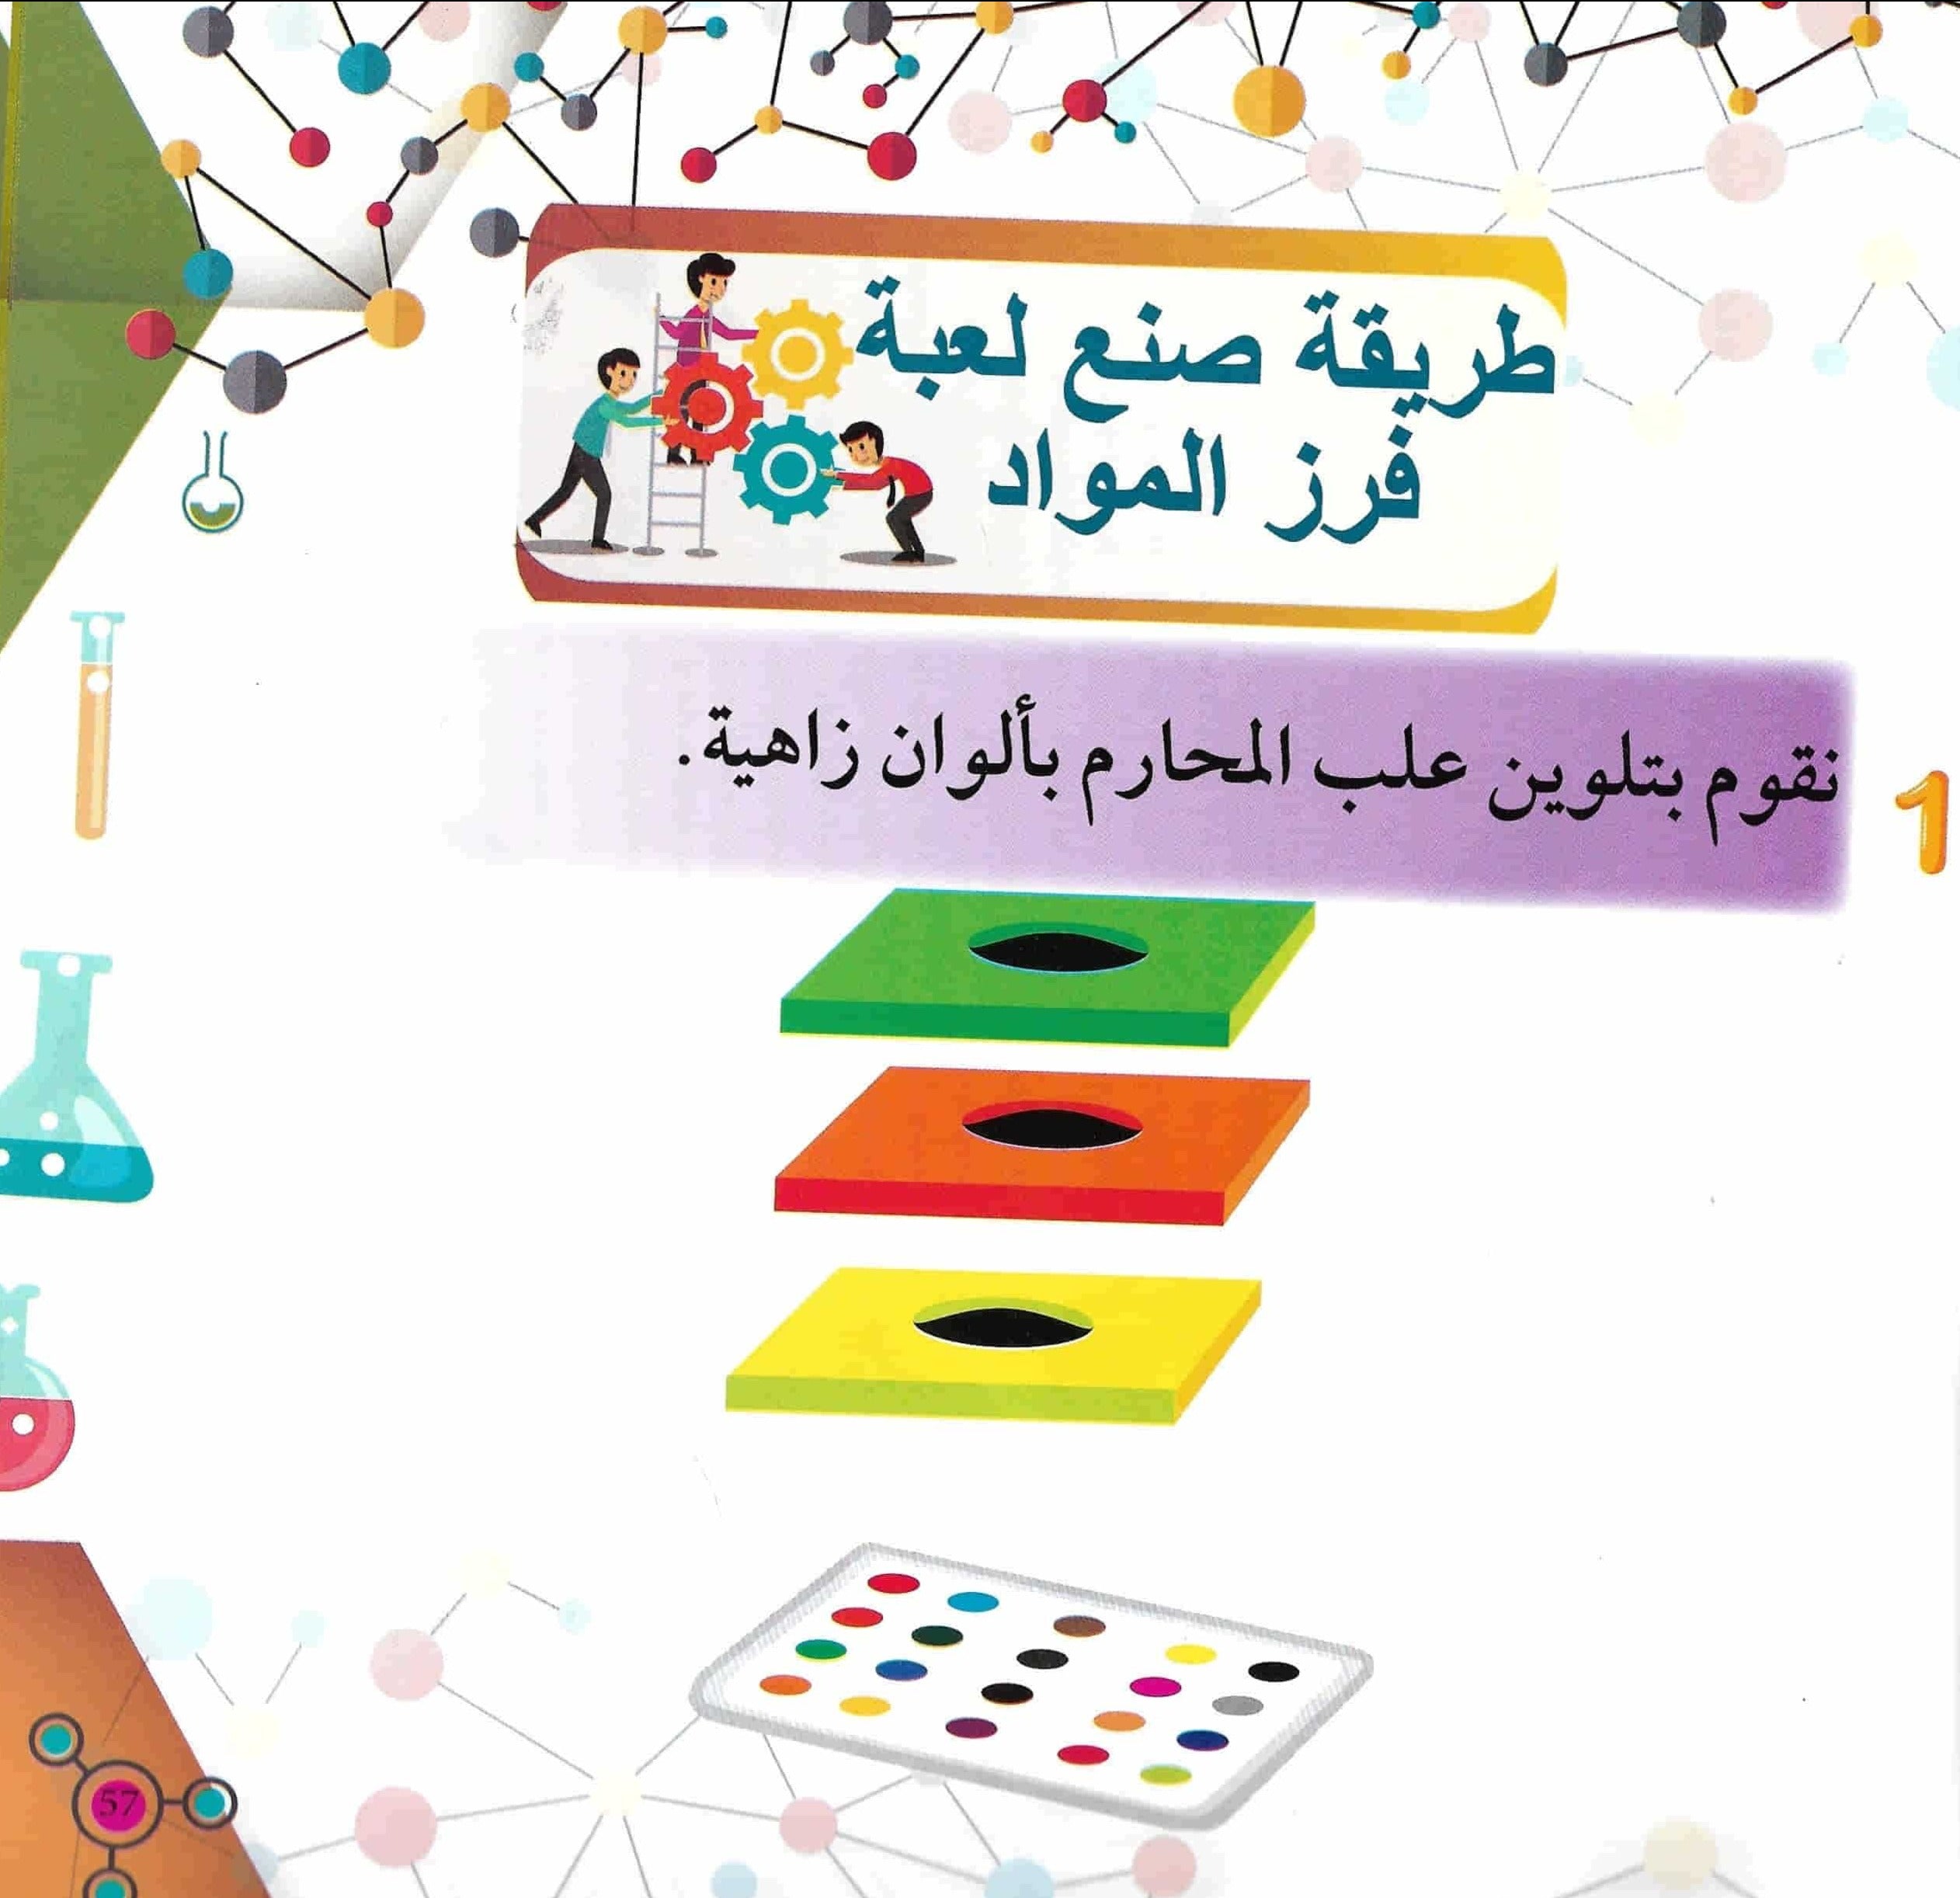 الكيمياء للصغار : تجارب علمية ممتعة للأطفال كتب أطفال هبة الحلبي